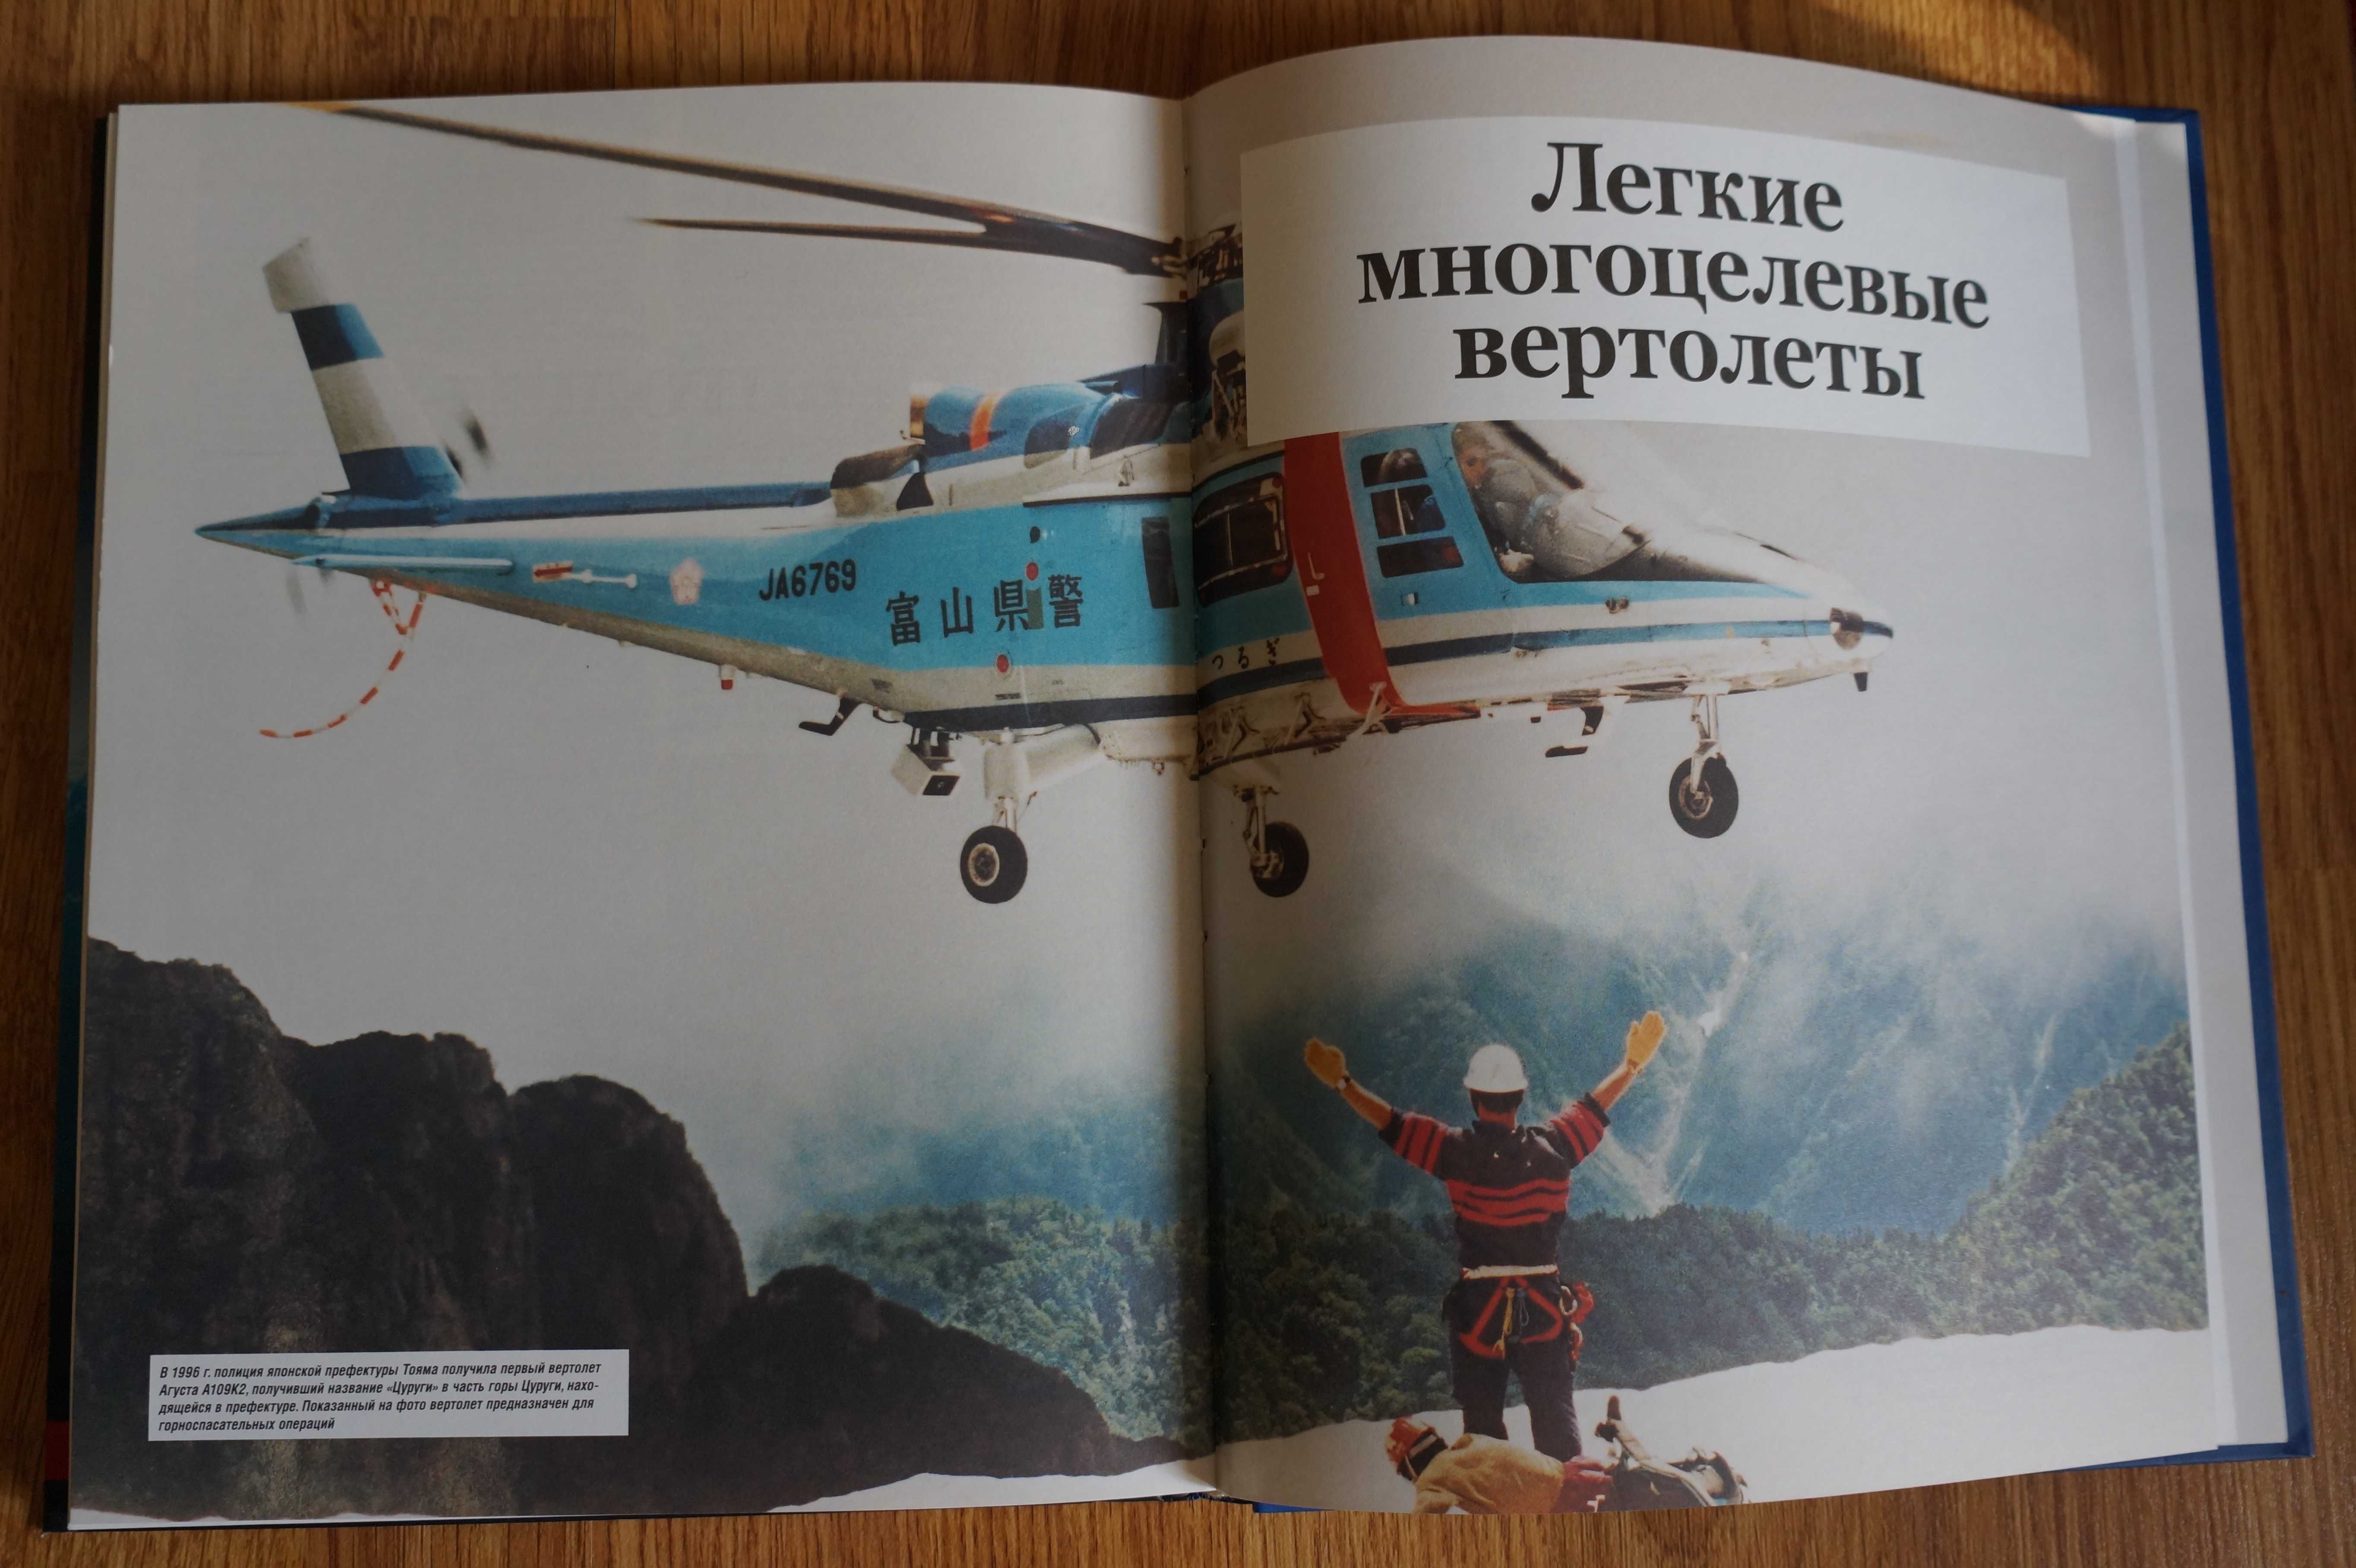 Вертолеты. Иллюстрированная энциклопедия